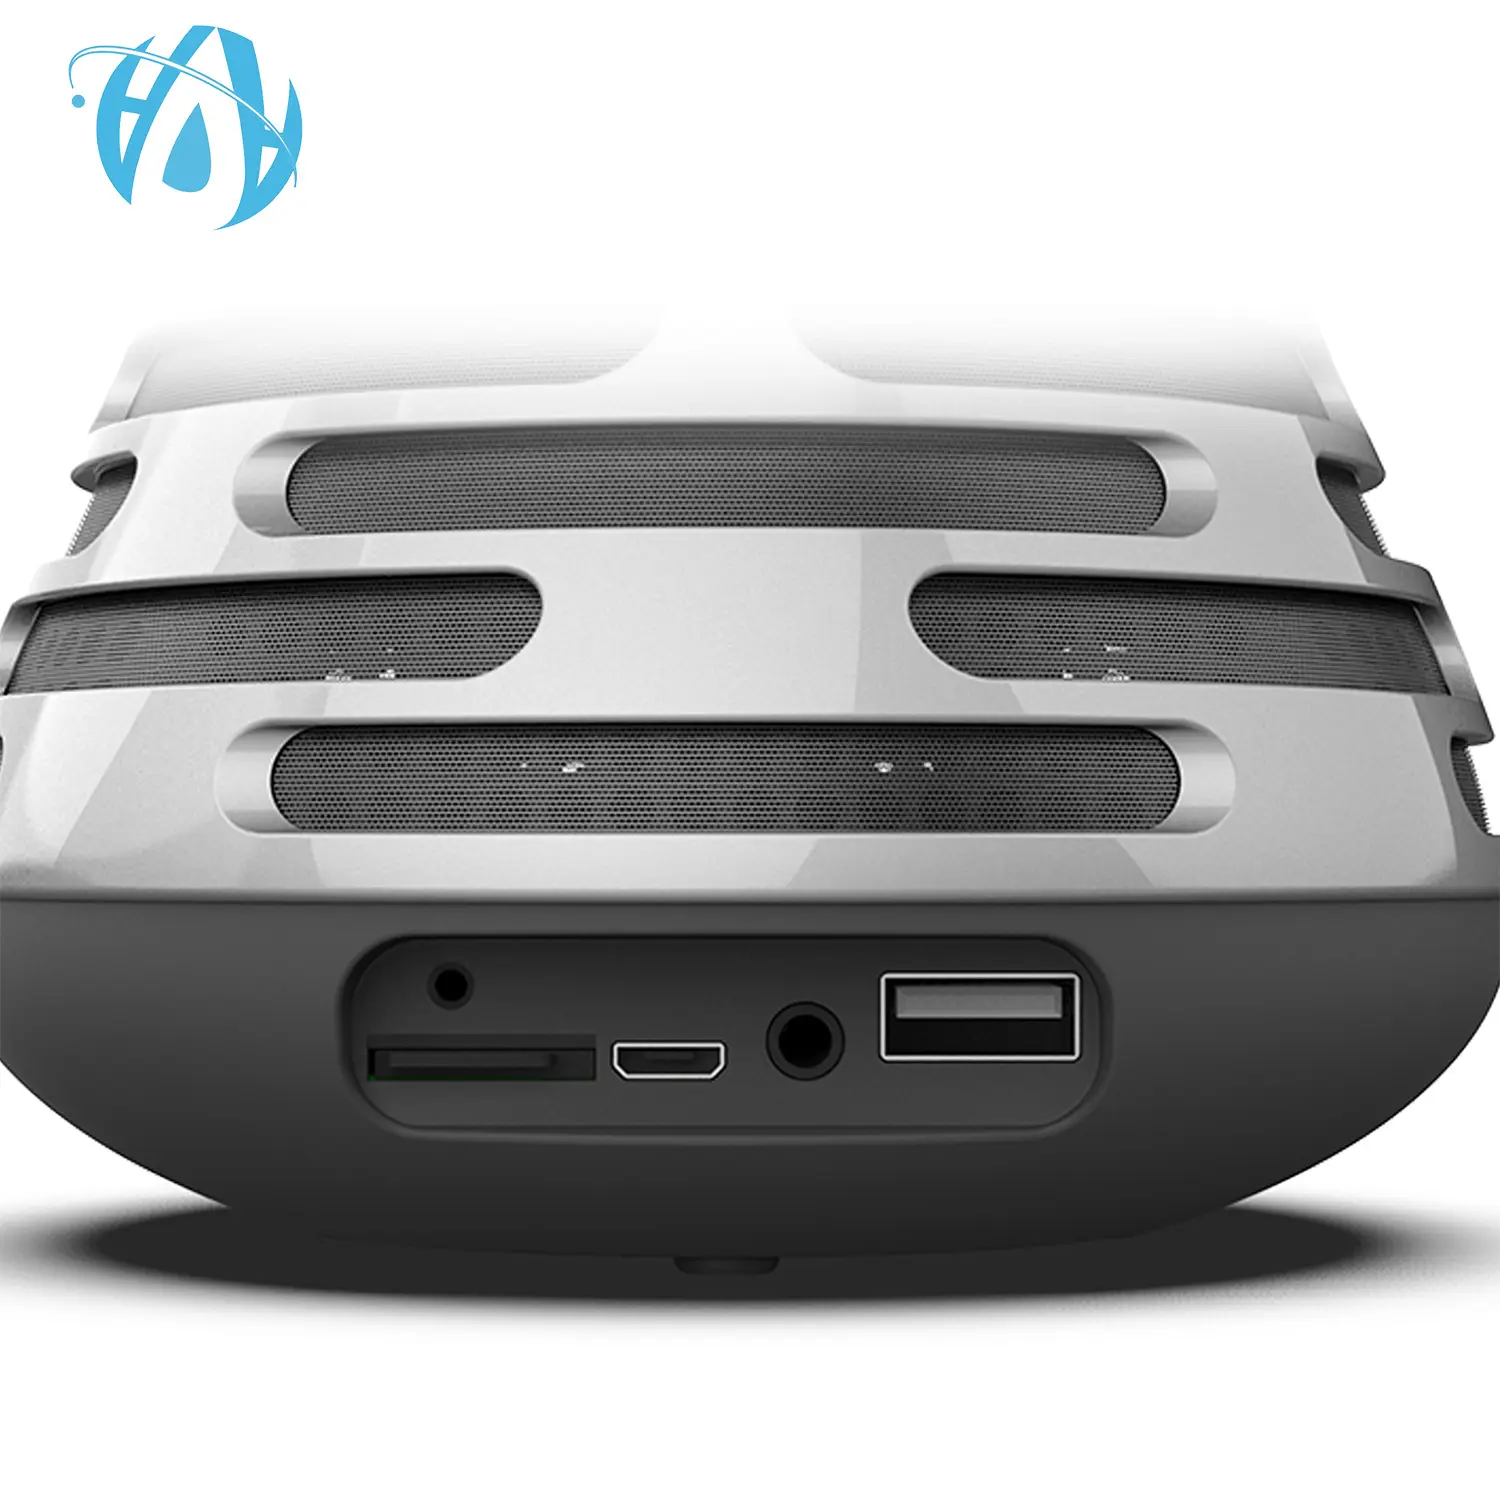 Altavoz portátil inalámbrico con Bluetooth, altavoz manos libres con sonido de alta calidad, bajo de 10W, gran oferta